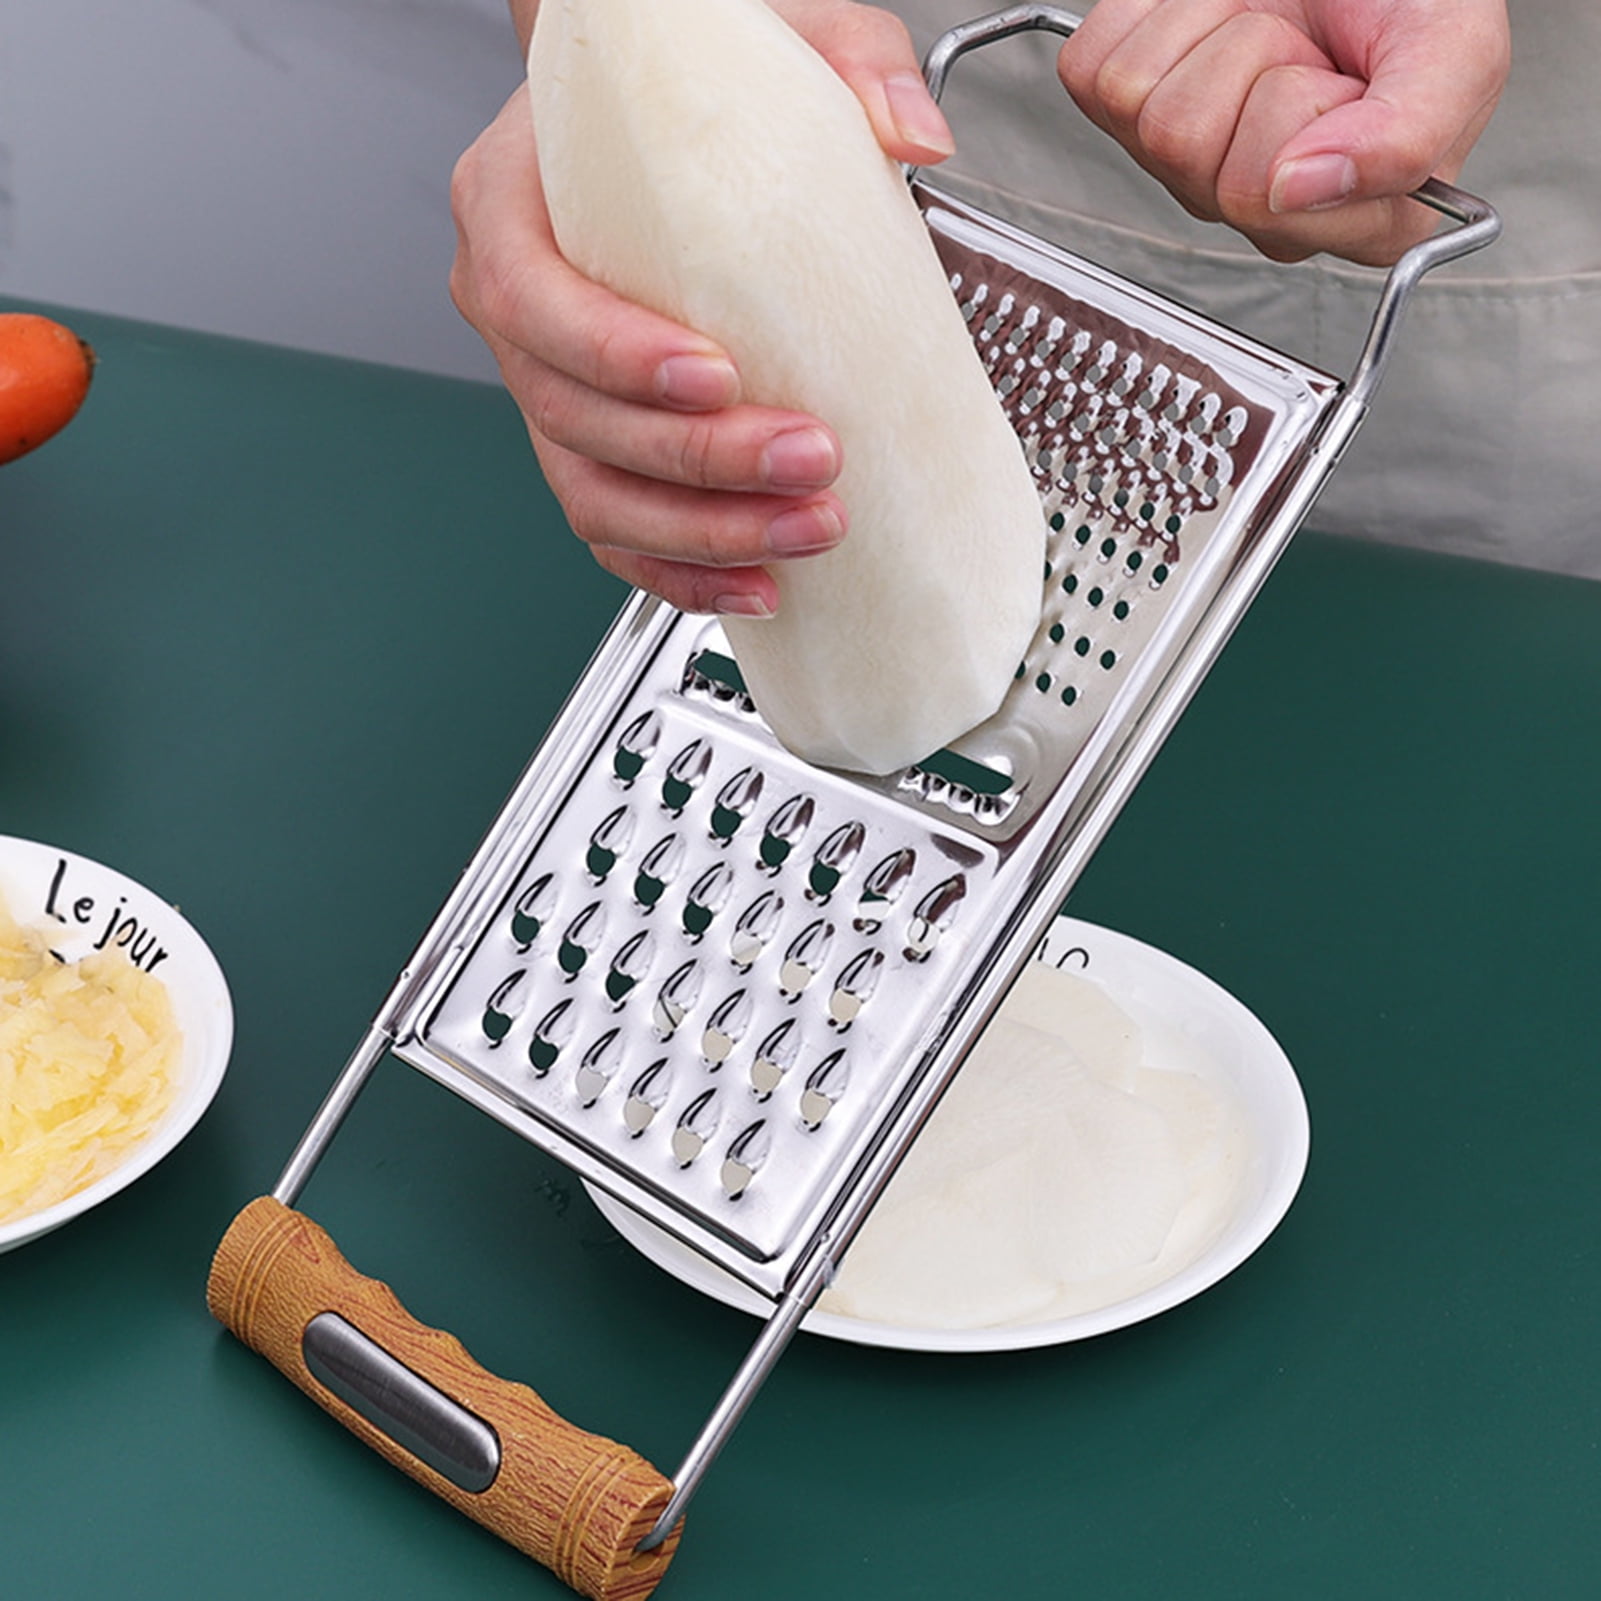  Suuker Vegetable Slicer Set,Stainless Steel Cheese Grater &  Vegetable Chopper with 4 adjustable Blades for Vegetables, Fruits,Hand-held  Shredder Cutter Grater Slicer: Home & Kitchen